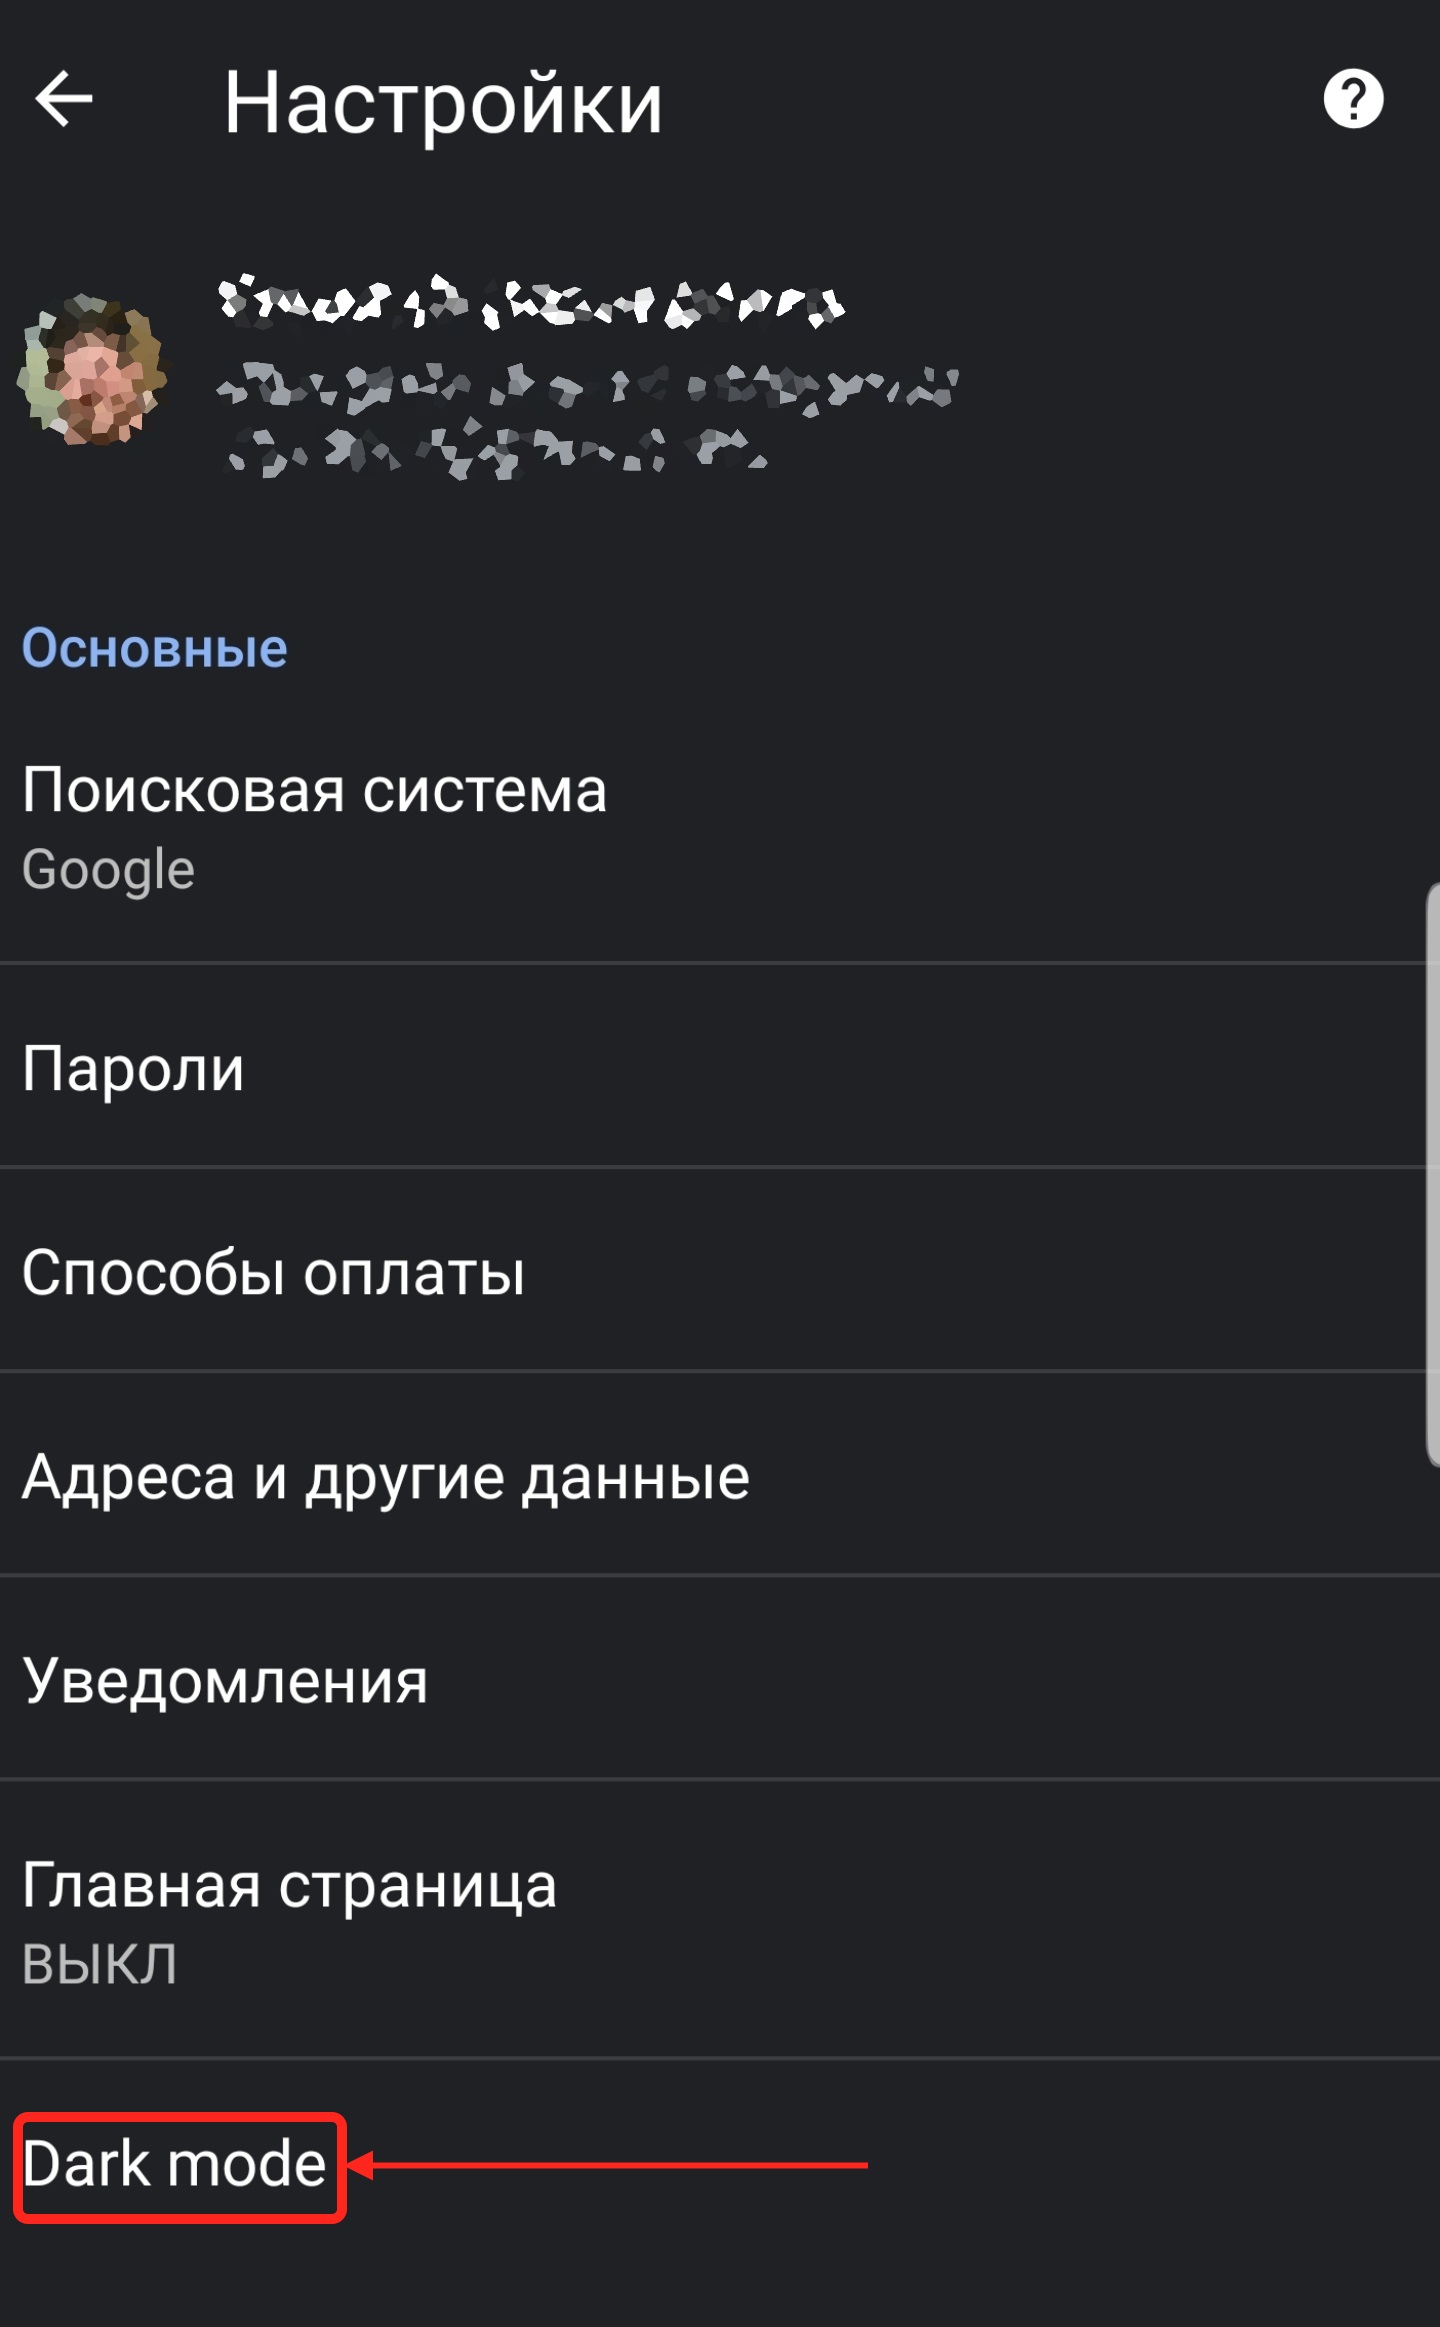 Включение темной темы в Google Chrome на Android